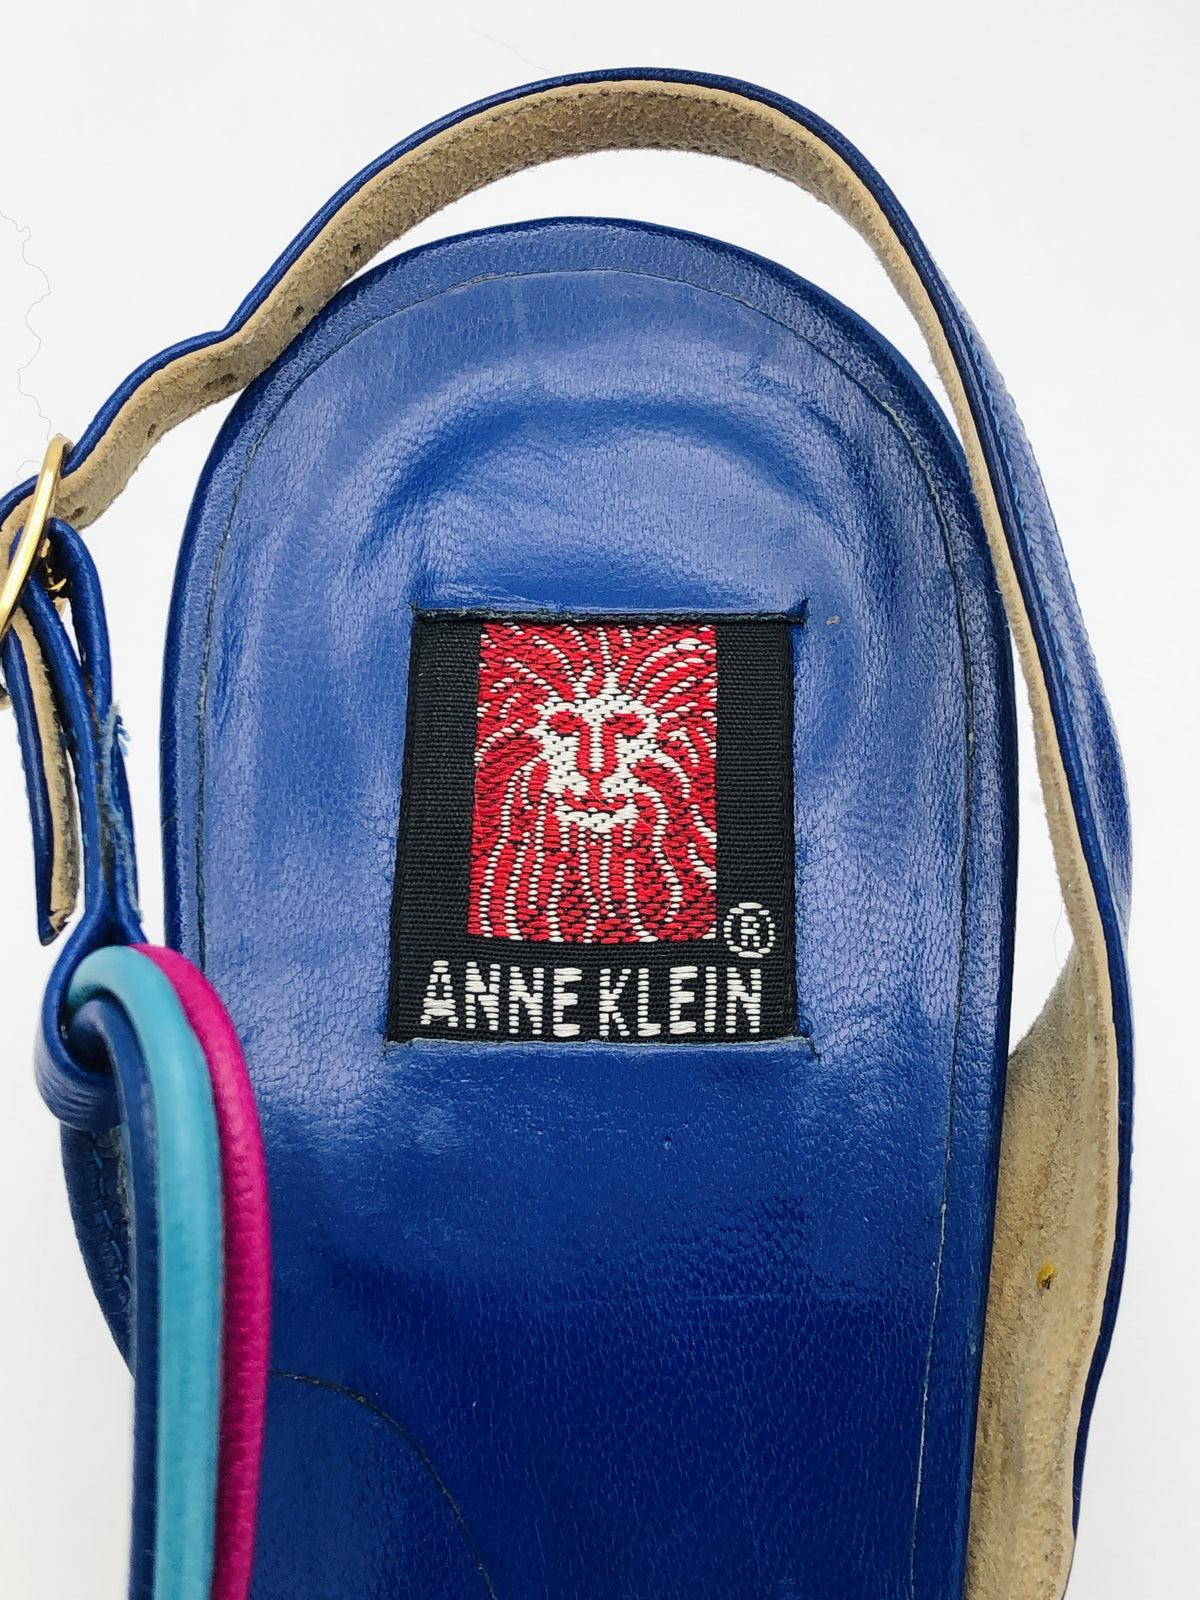 Anne Klein Leather Strappy Sandals